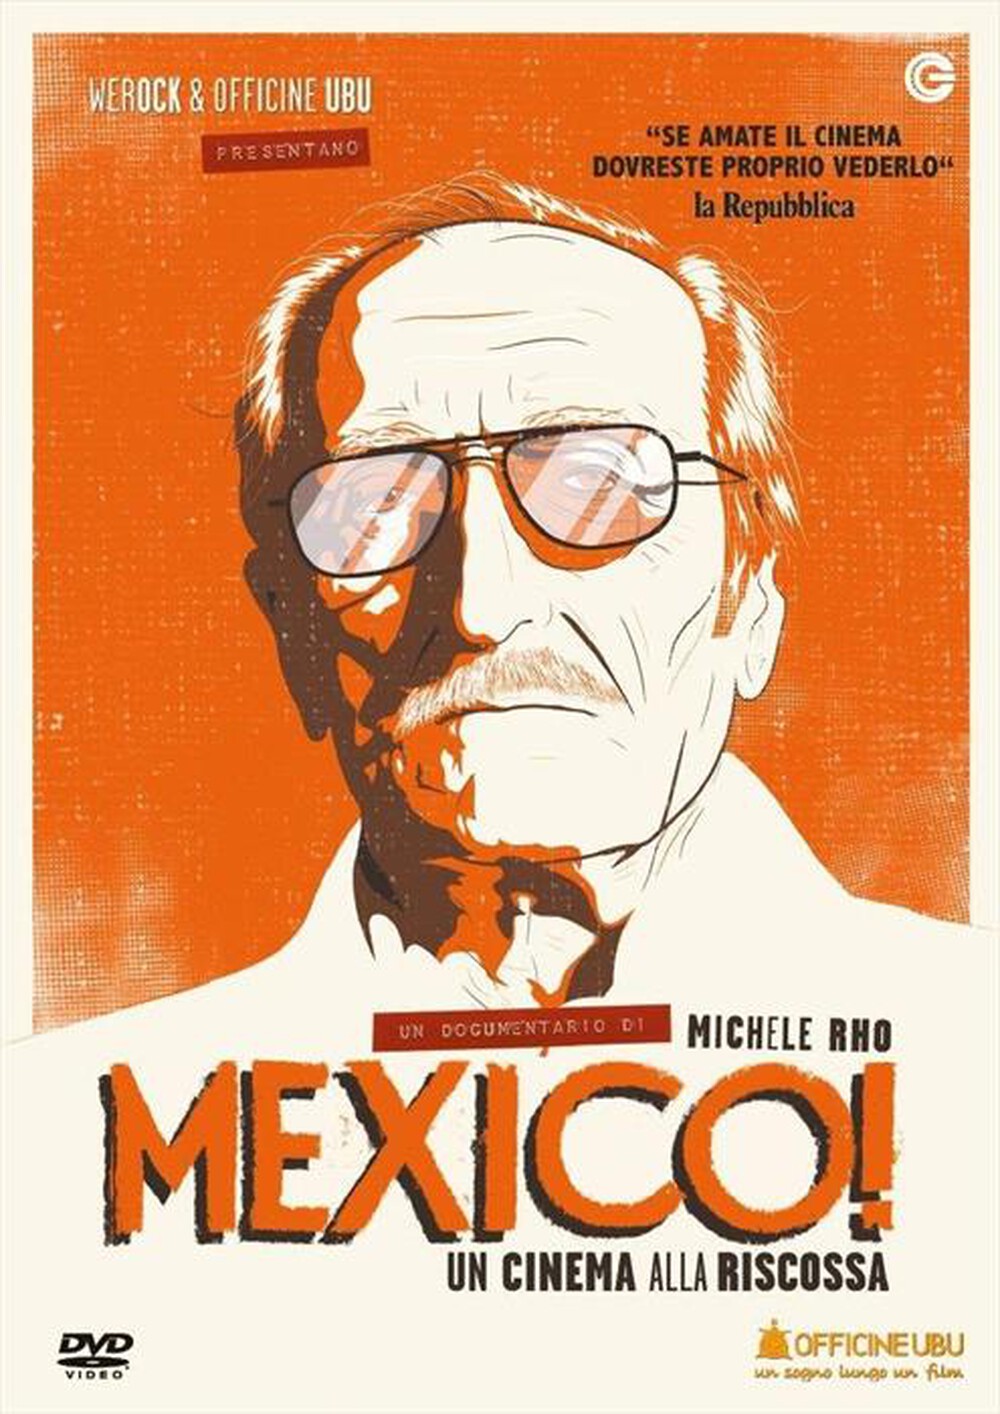 "OFFICINE UBU - Mexico! Un Cinema Alla Riscossa"